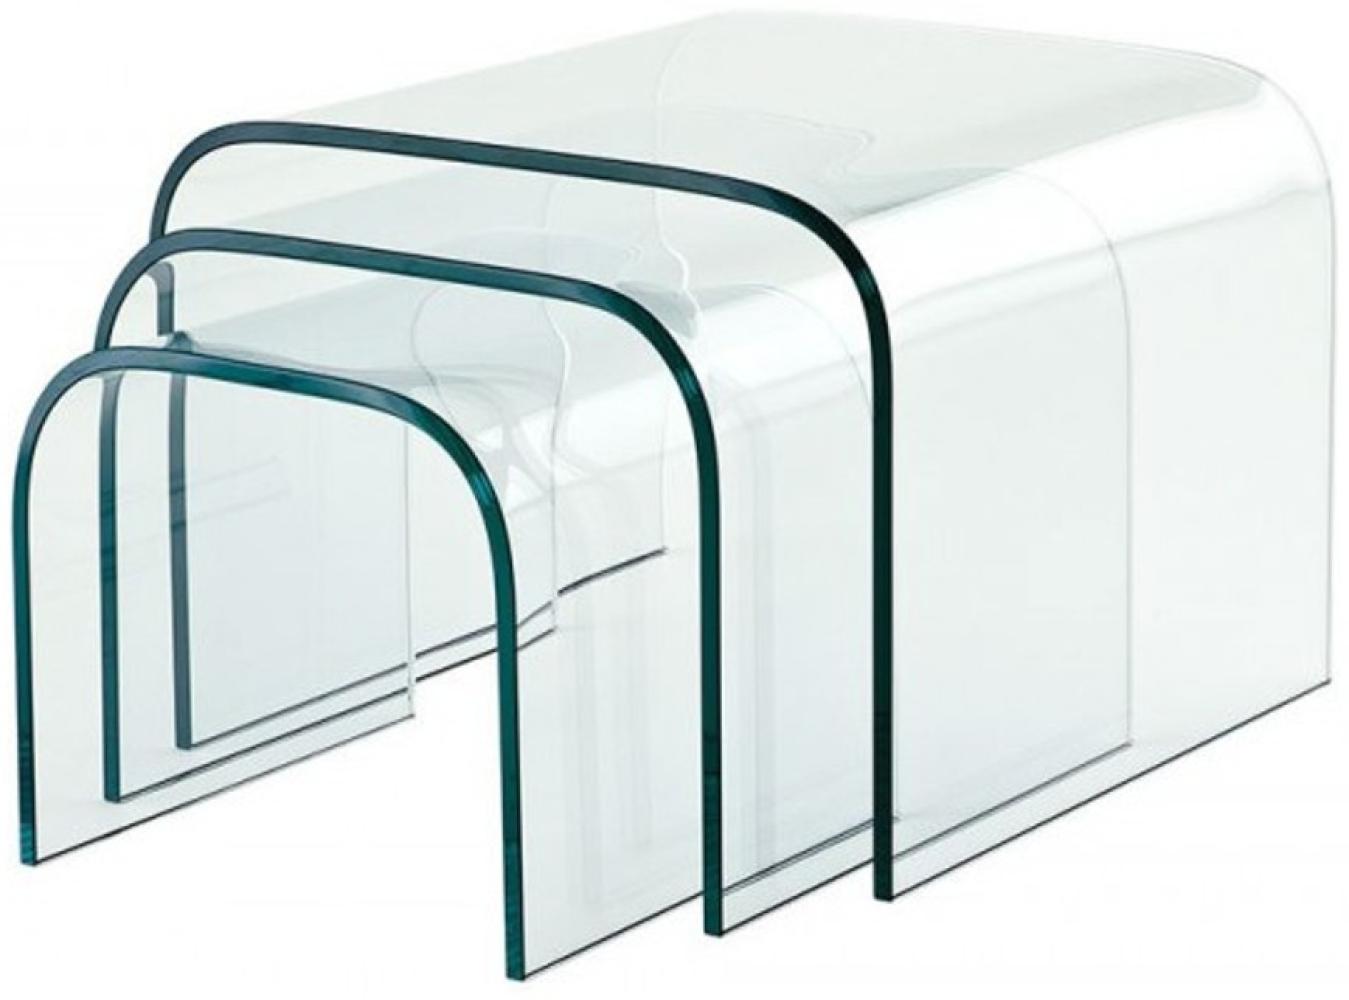 Casa Padrino Luxus Art Deco Designer Glas Beistelltisch 3er Set - Luxus Kollektion Bild 1